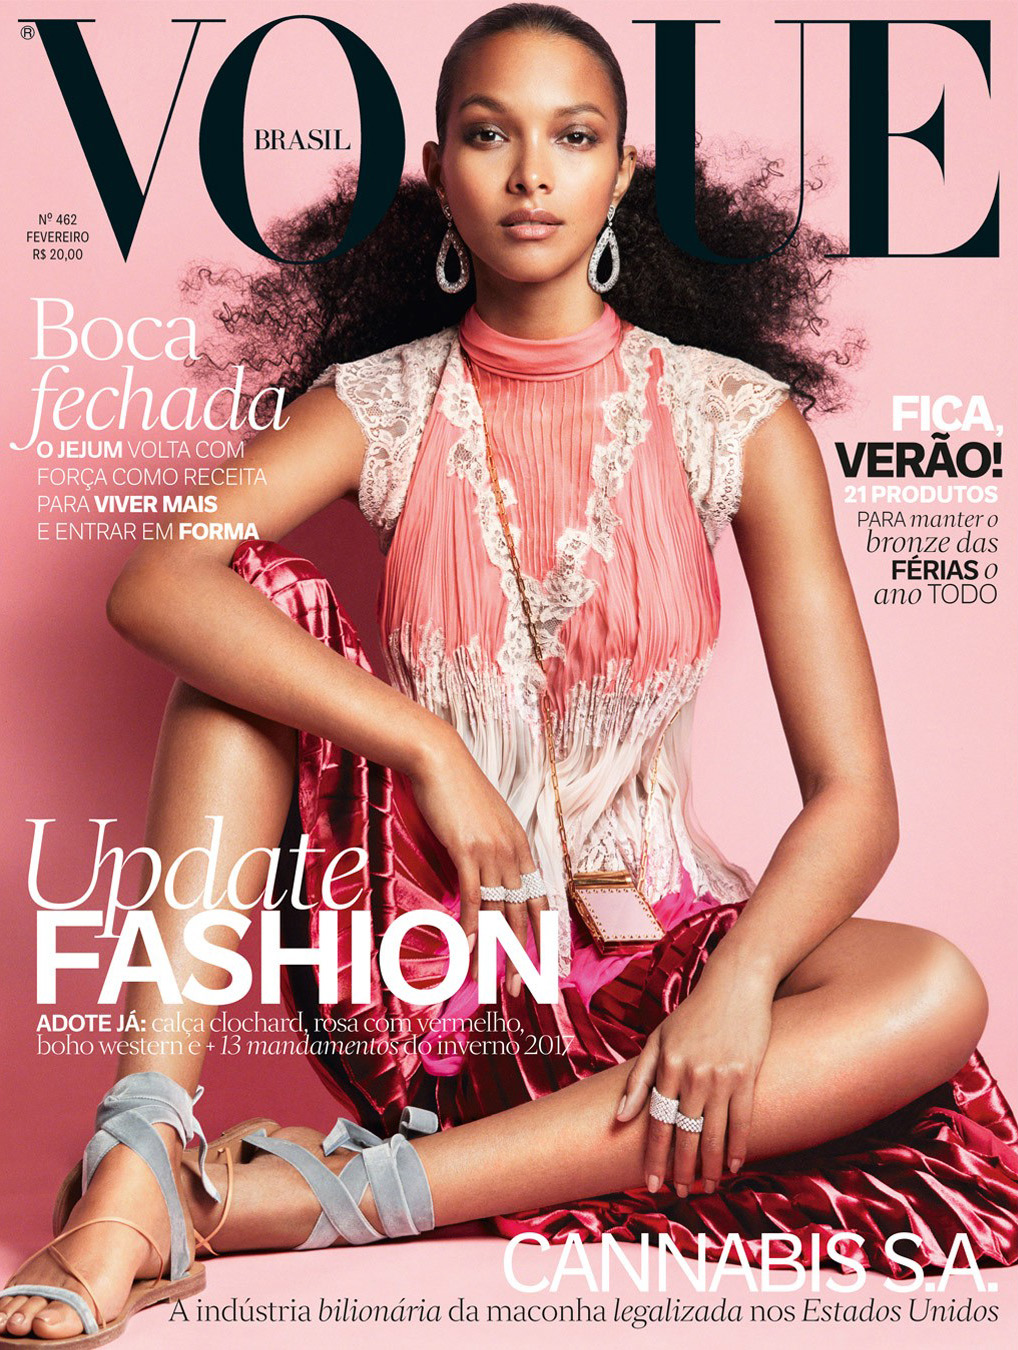 Vogue Brasil June 2017 Covers (Vogue Brasil)